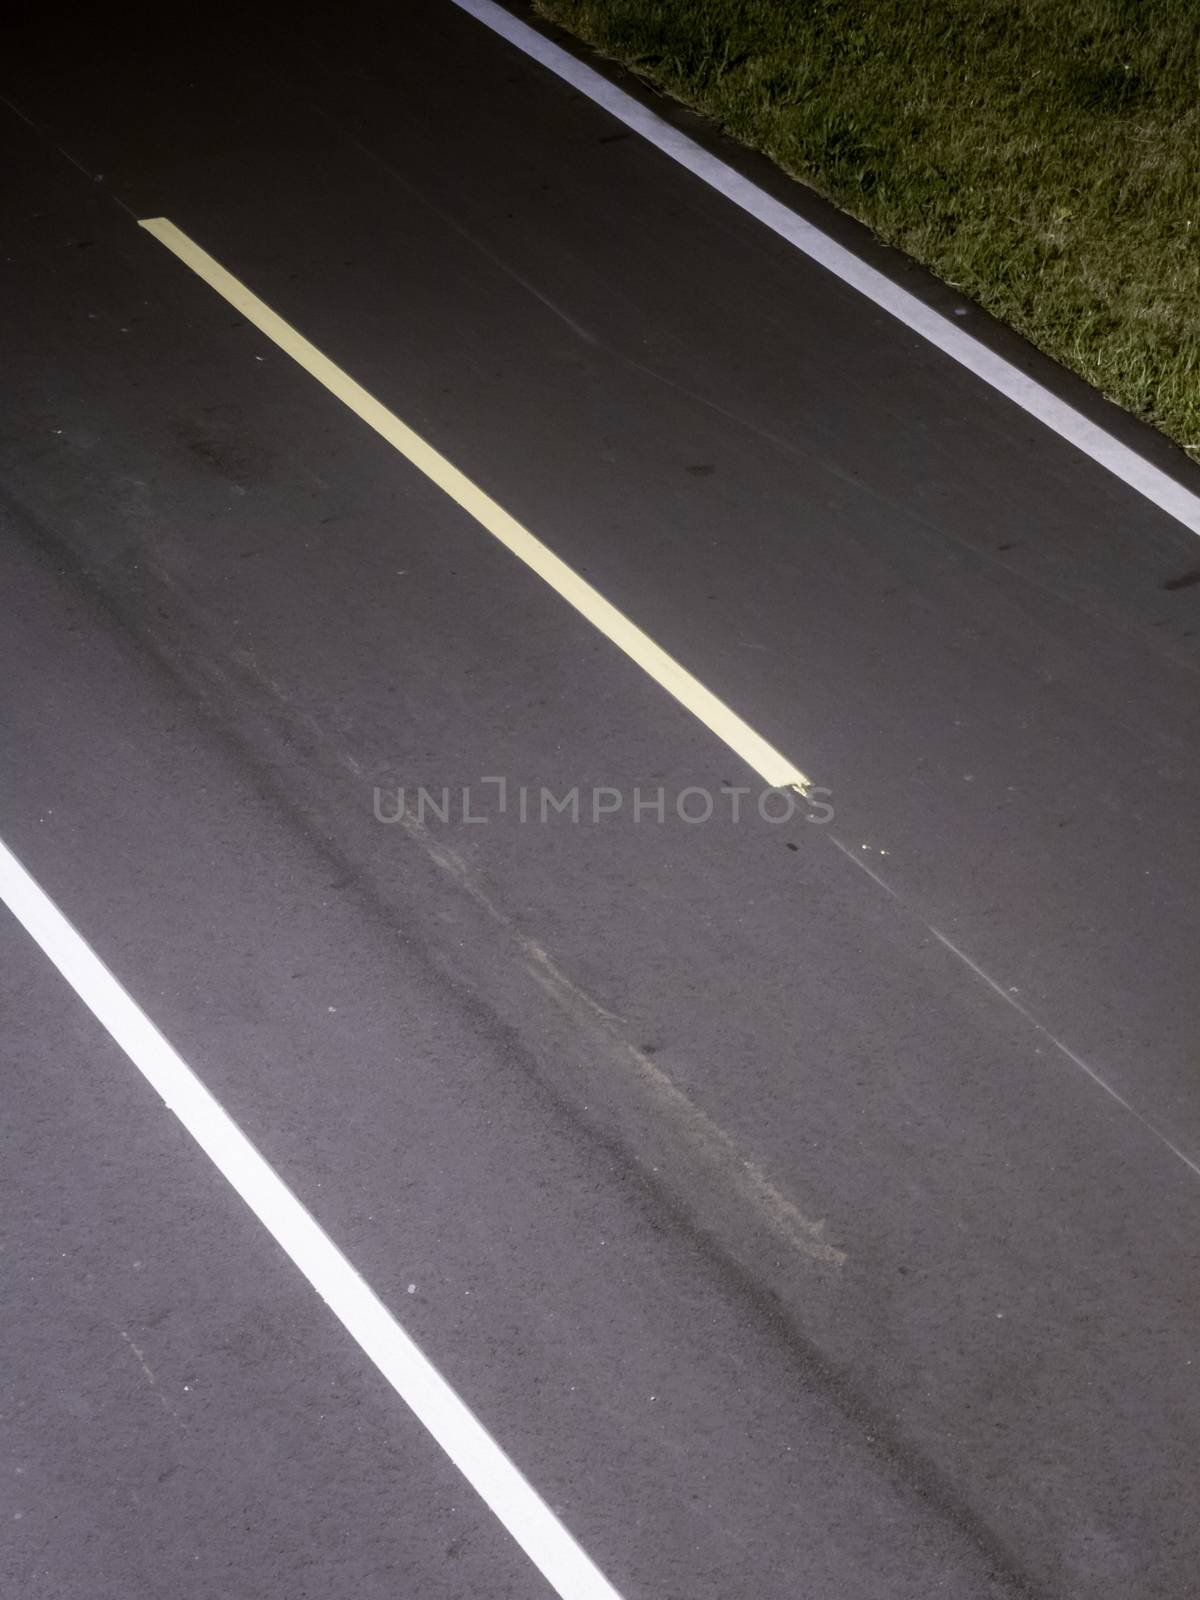 Cycling or jogging lane at park at night